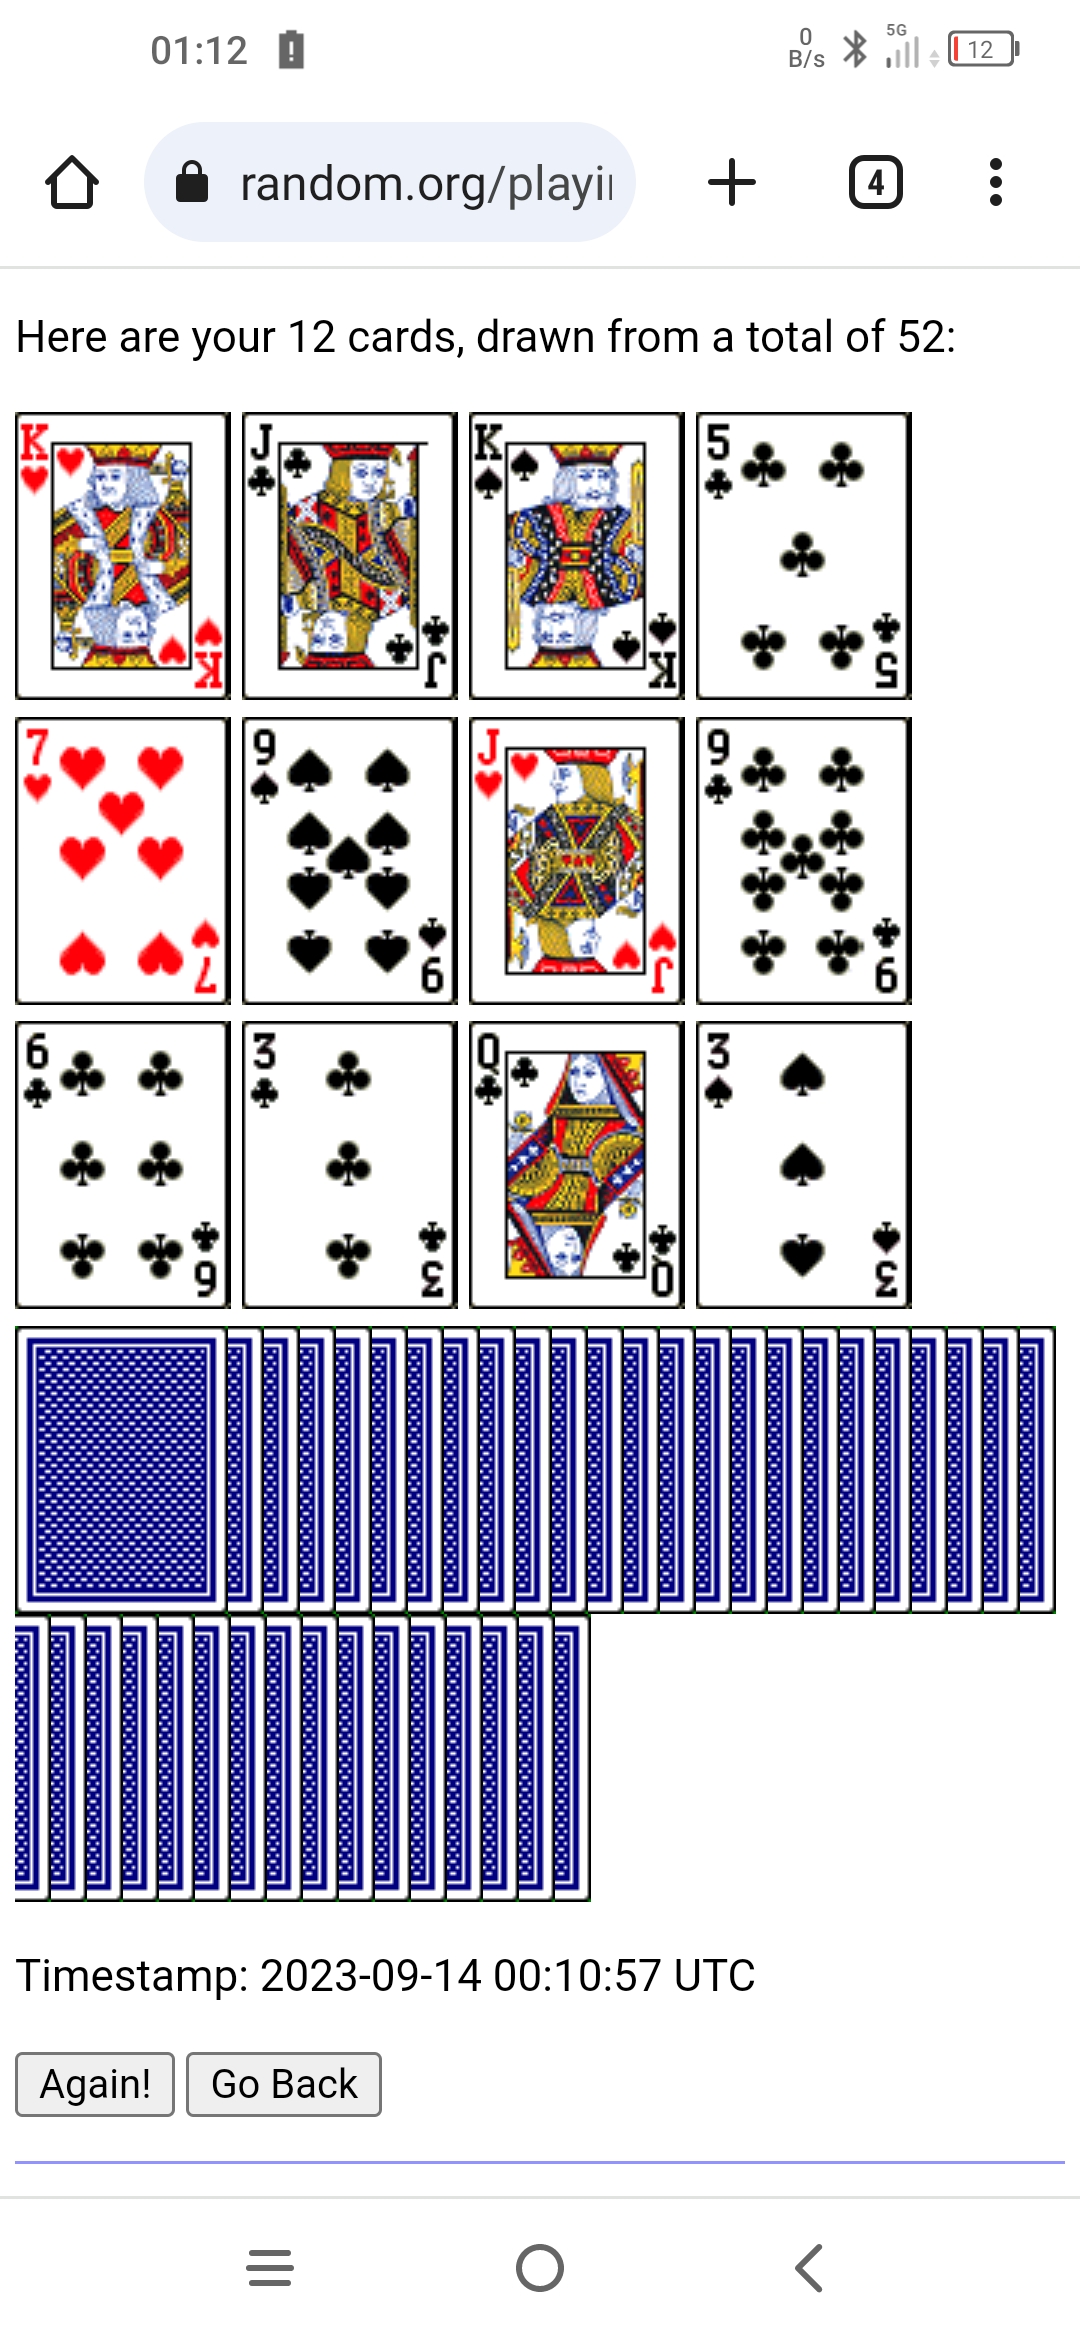 Poker hands: